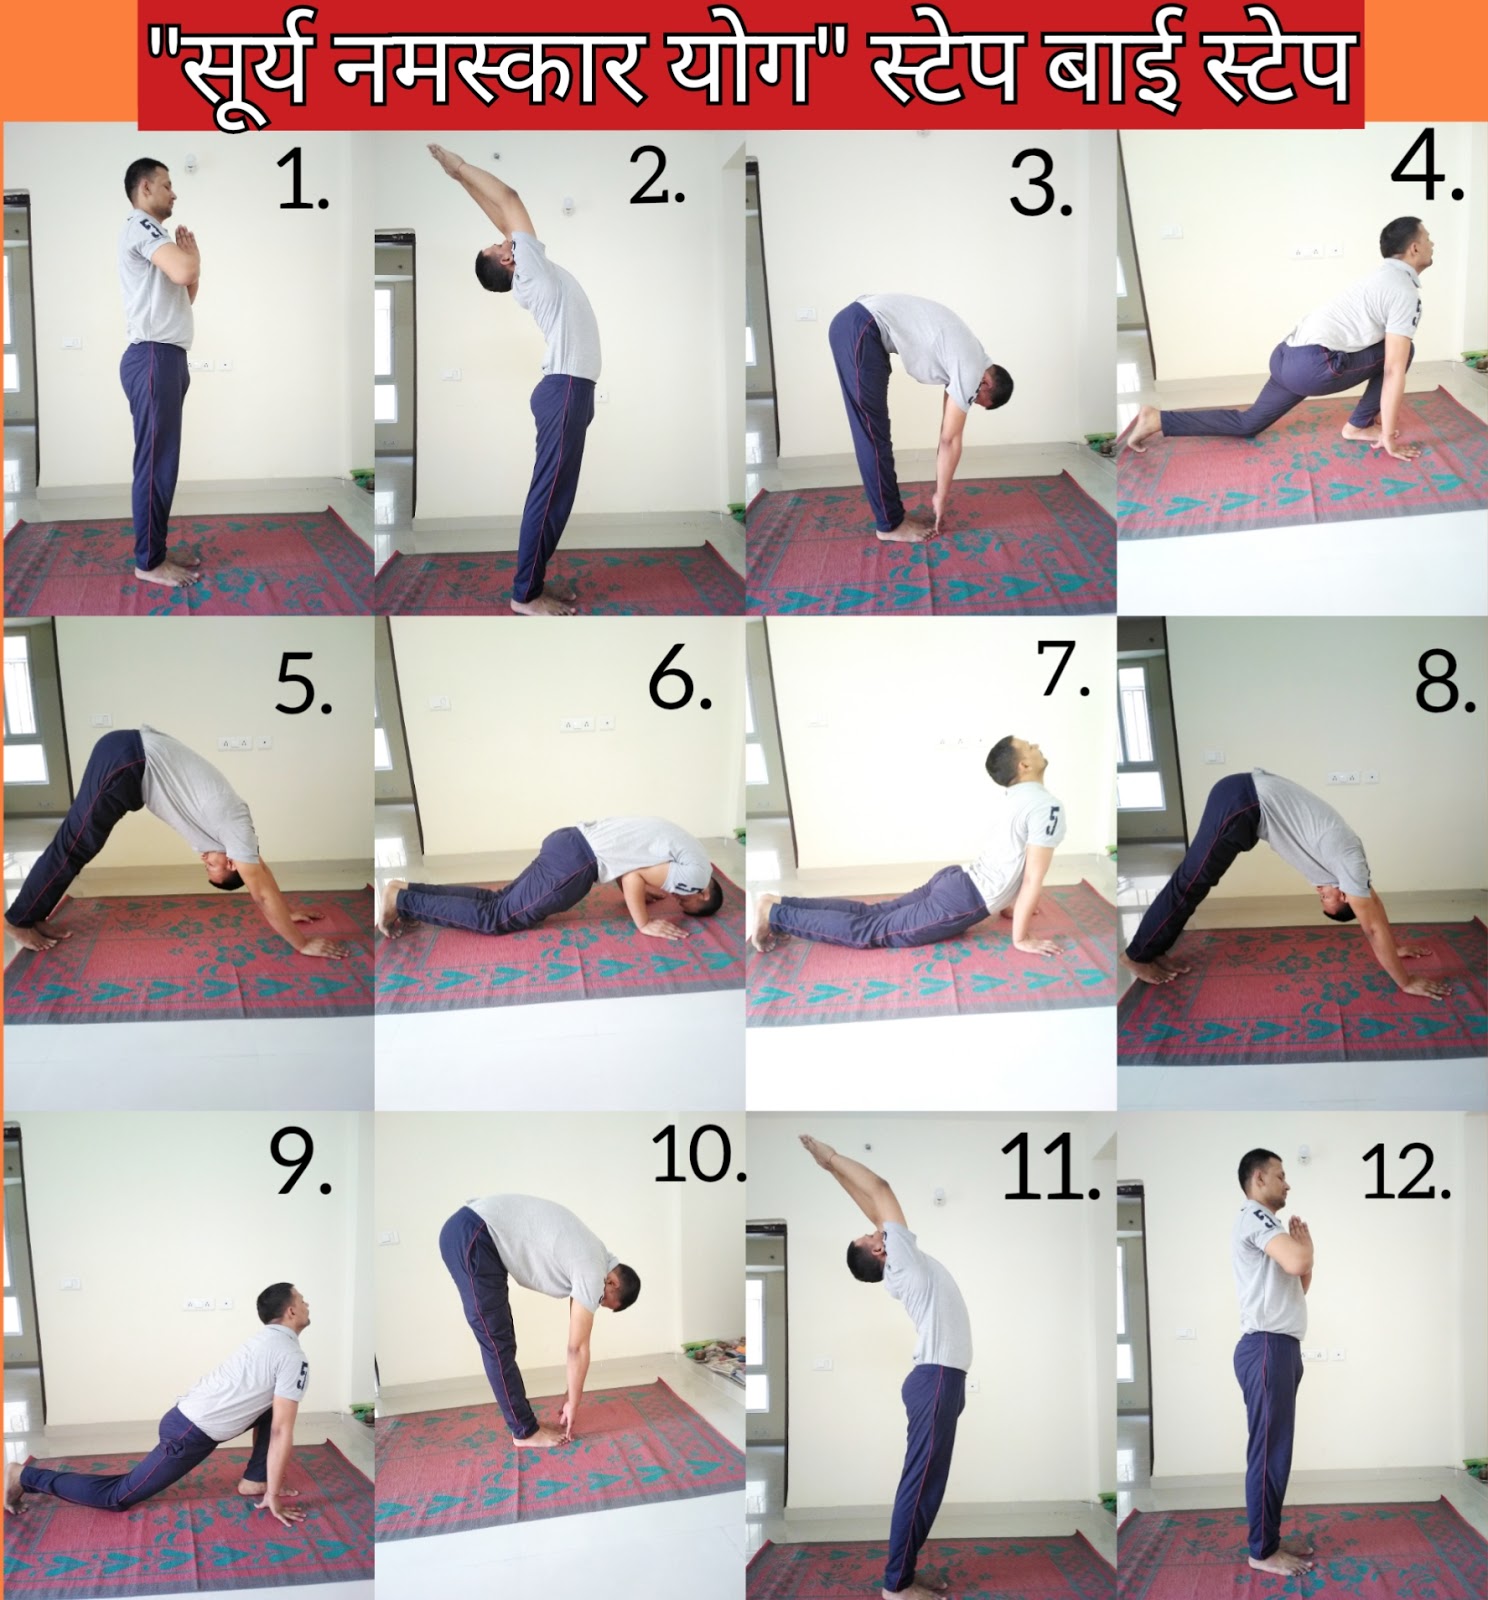 Surya namaskar is equal to full body workout know miraculous benefits |  घंटेभर एक्सरसाइज नहीं होती तो सिर्फ सूर्य नमस्कार की डाल लें आदत, बीमारियां  पास भी नहीं भटकेंगीं ...